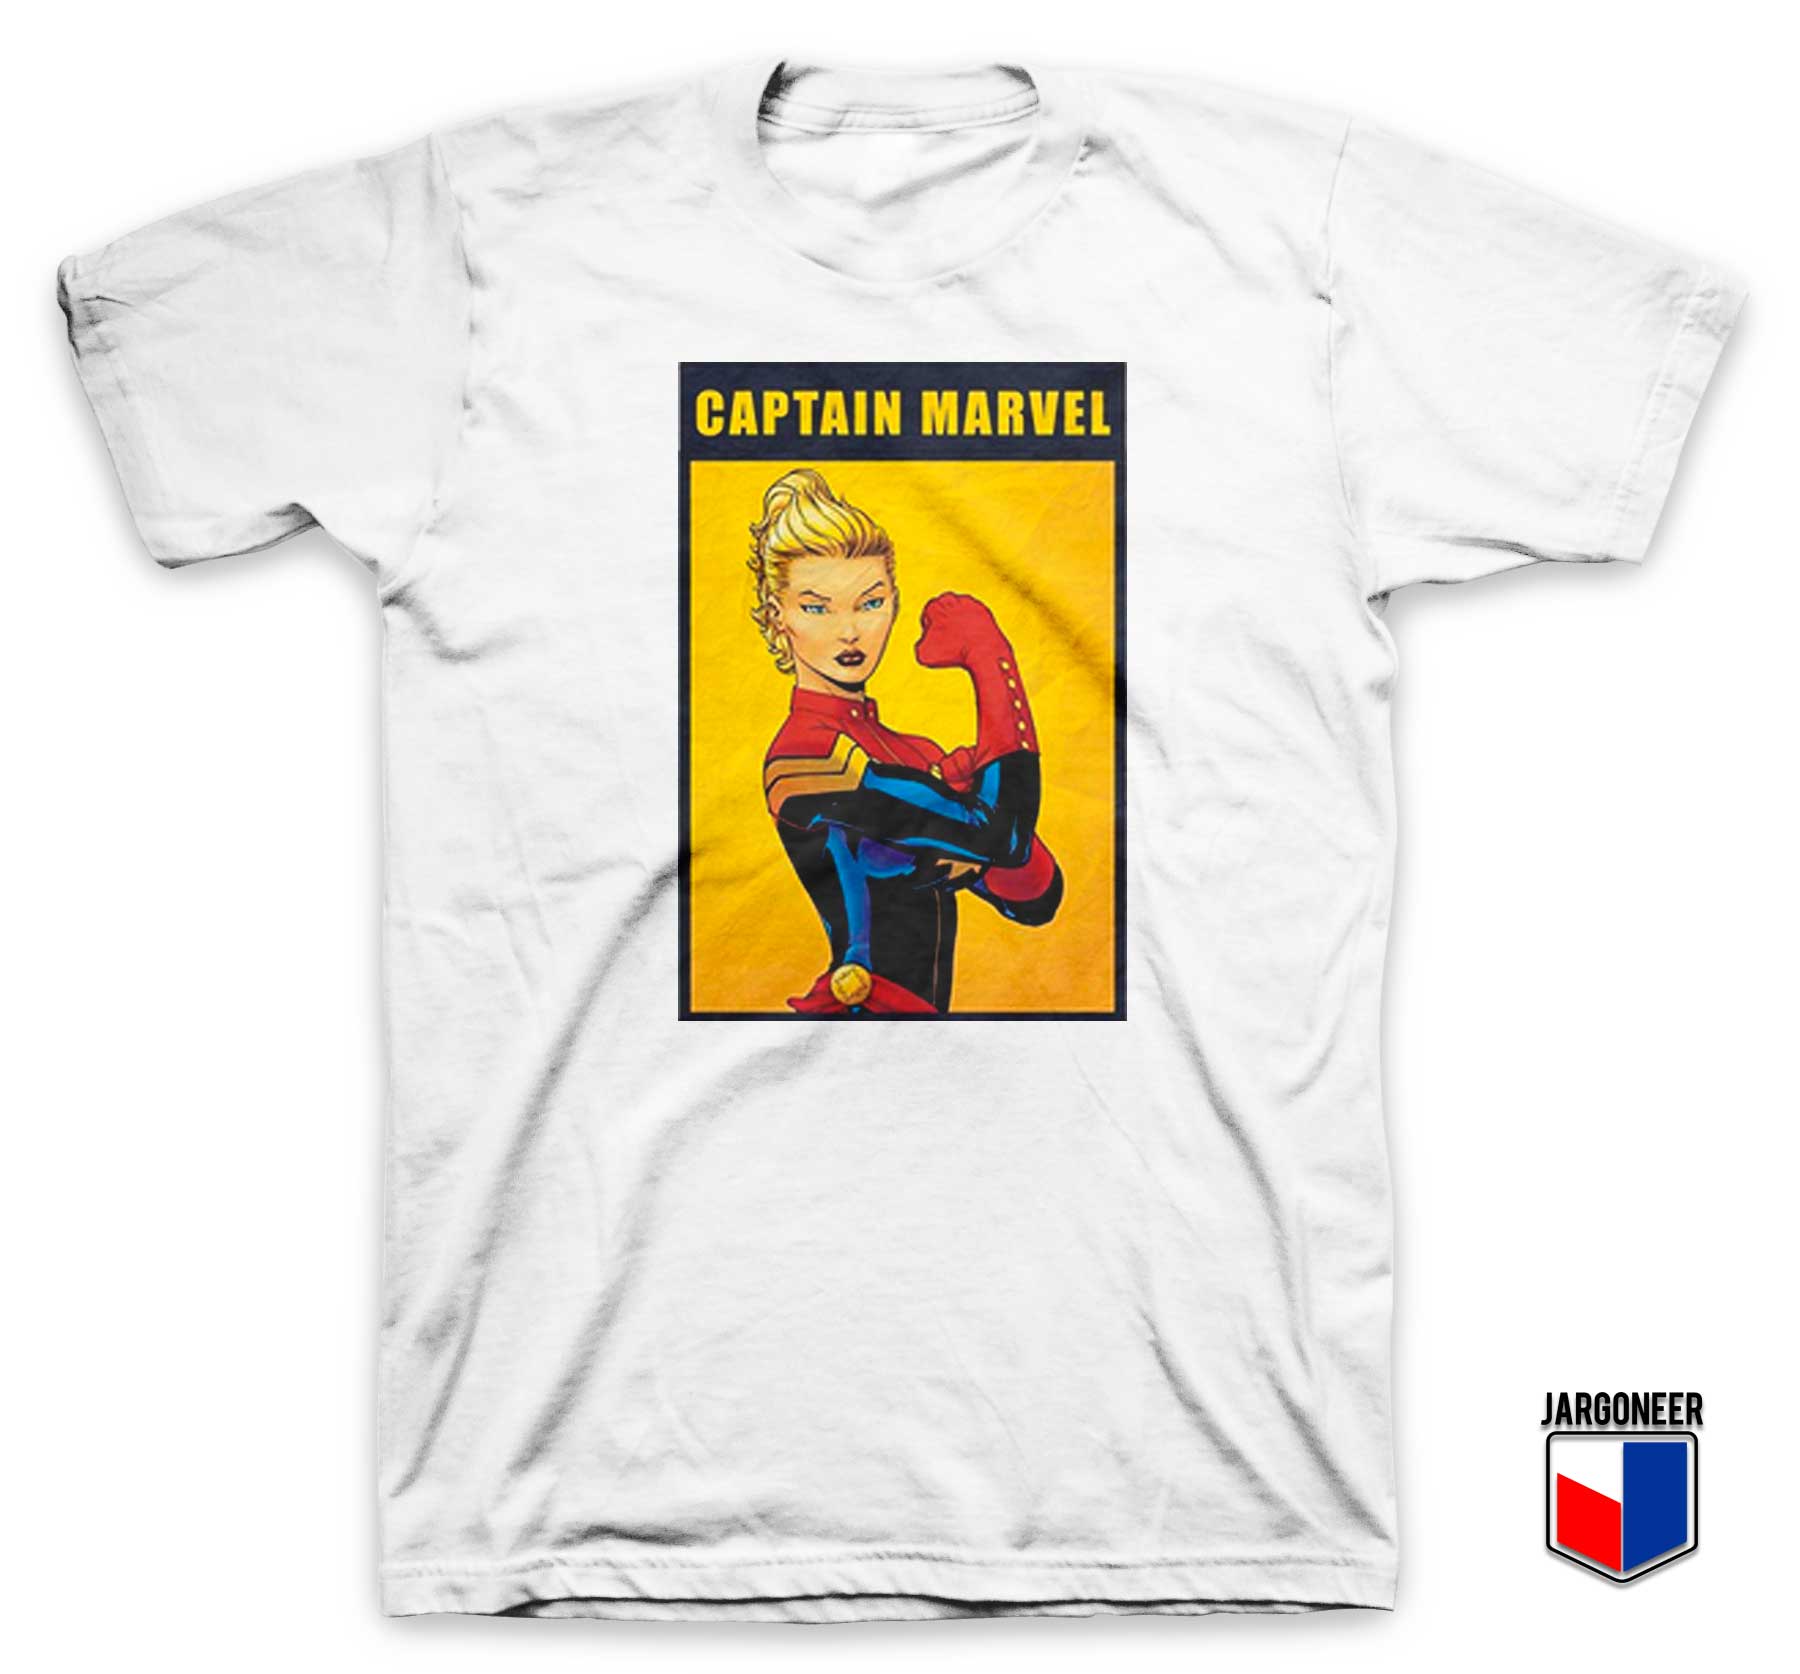 Captain Marvel The Riveter Poster T Shirt - Shop Unique Graphic Cool Shirt Designs